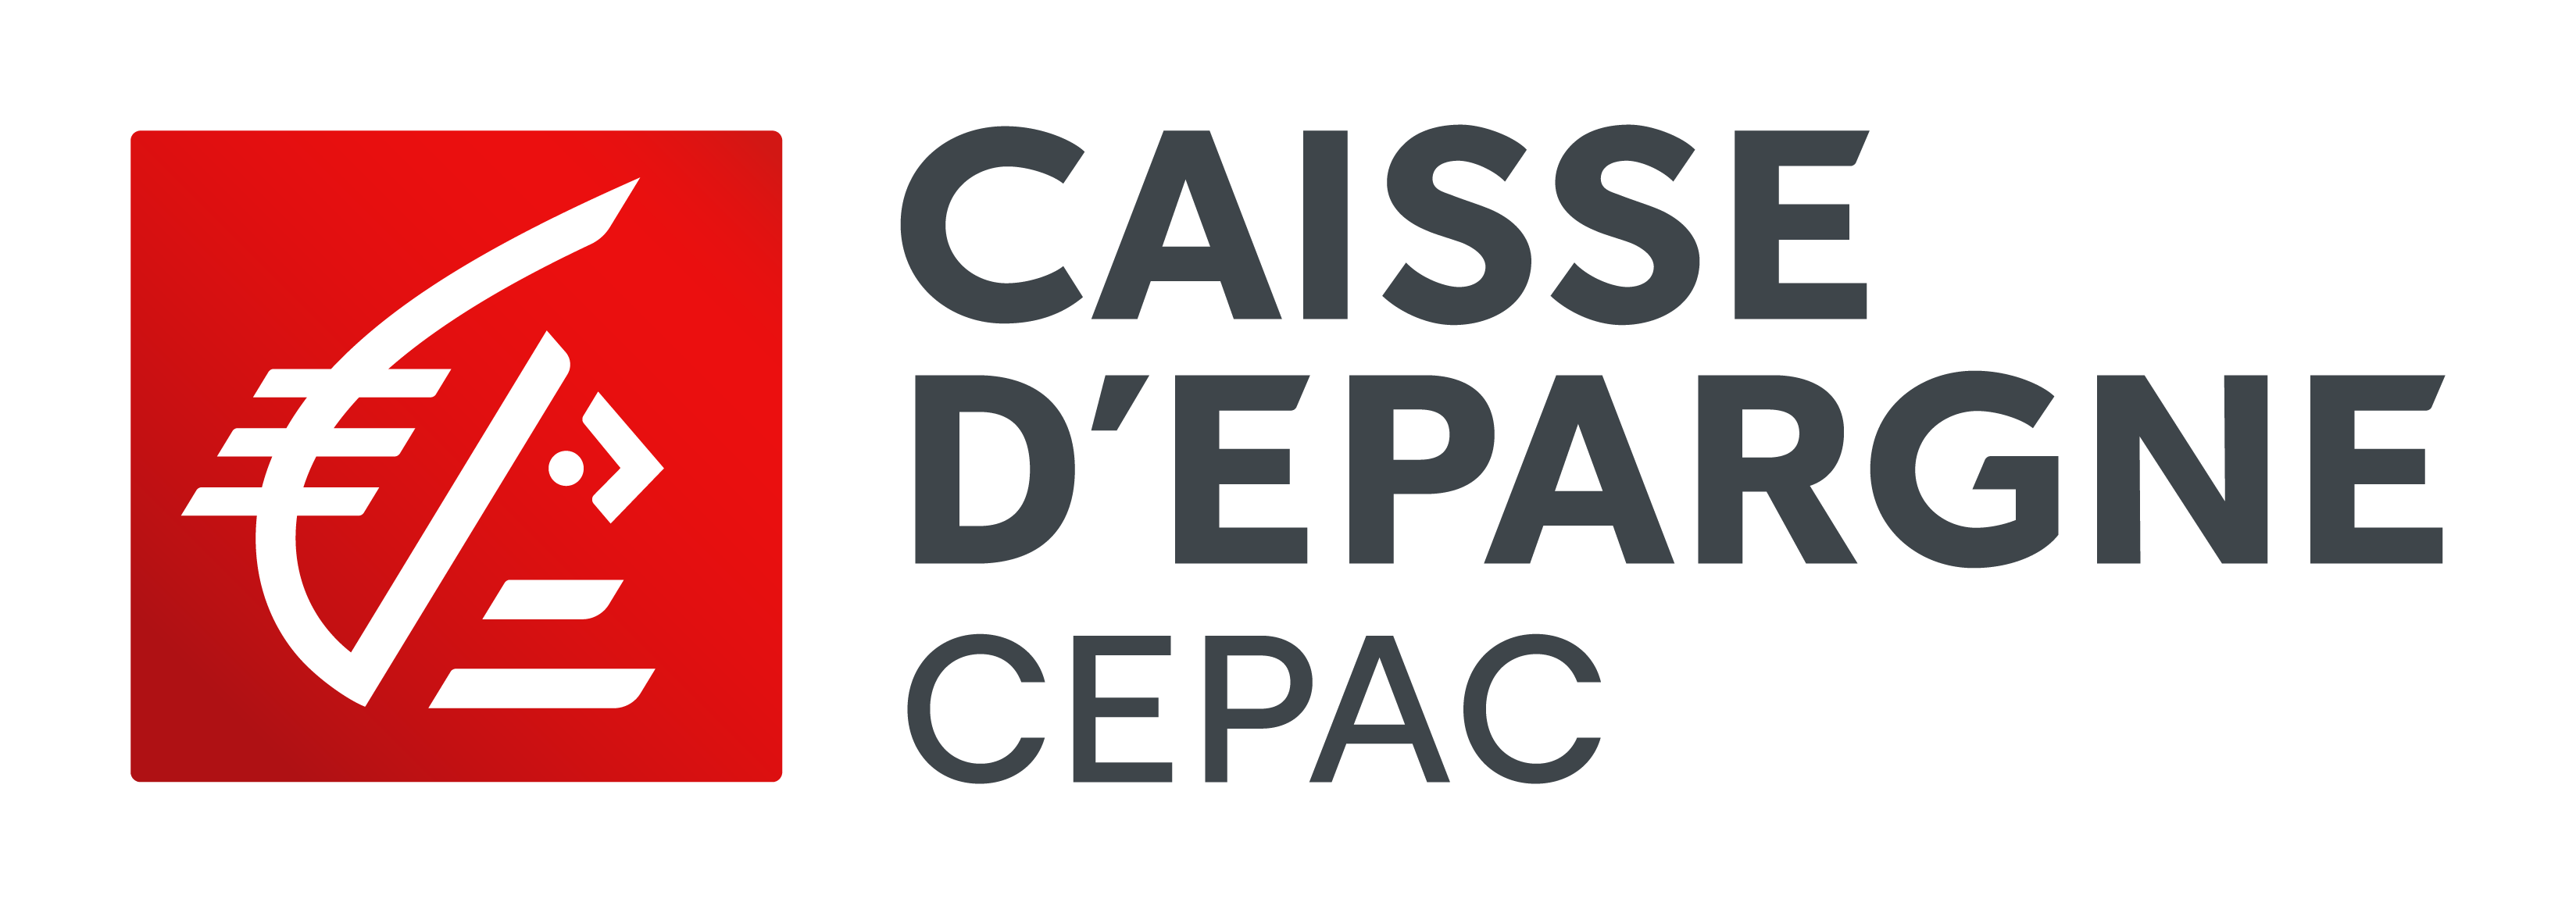 CAISSE D'EPARGNE CEPAC